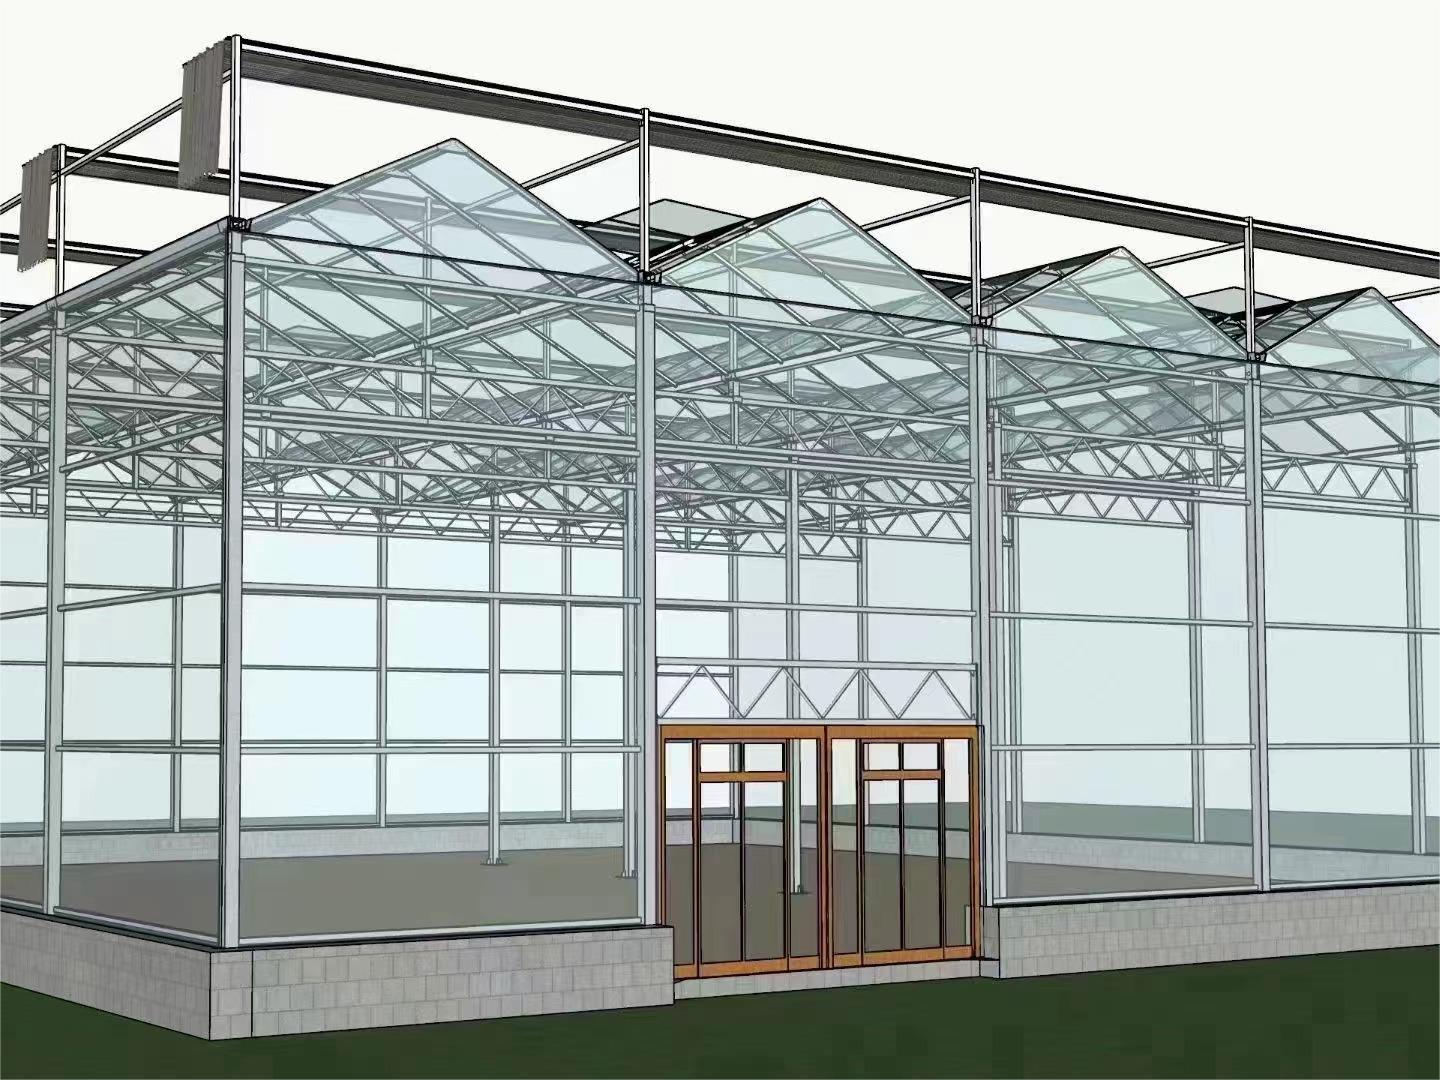 玻璃温室大棚